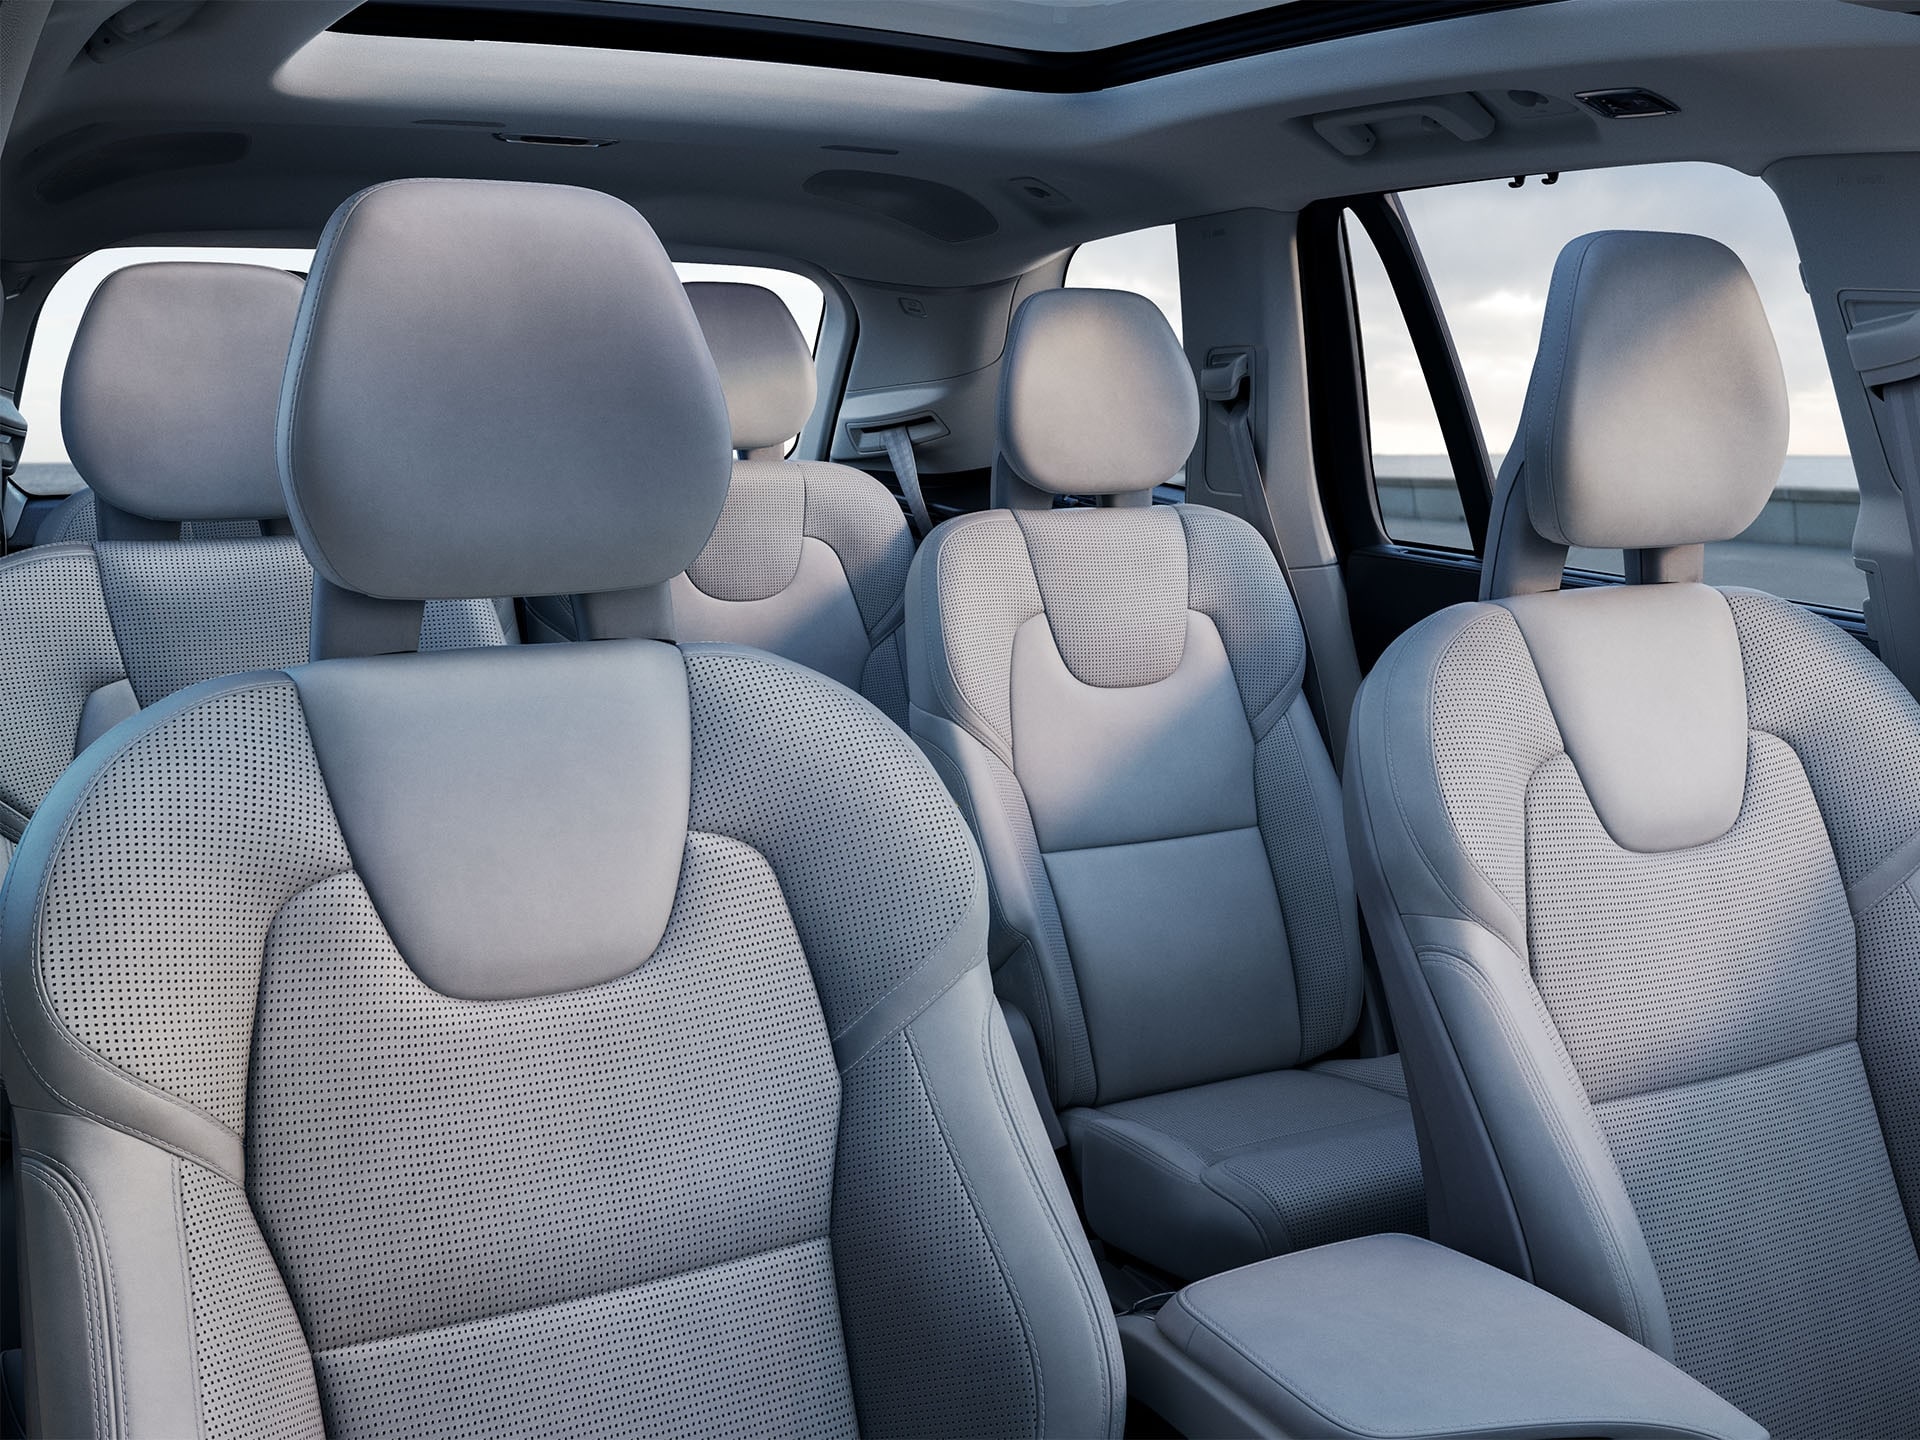 Dentro de un Volvo SUV con 3 filas, interior color claro en los asientos